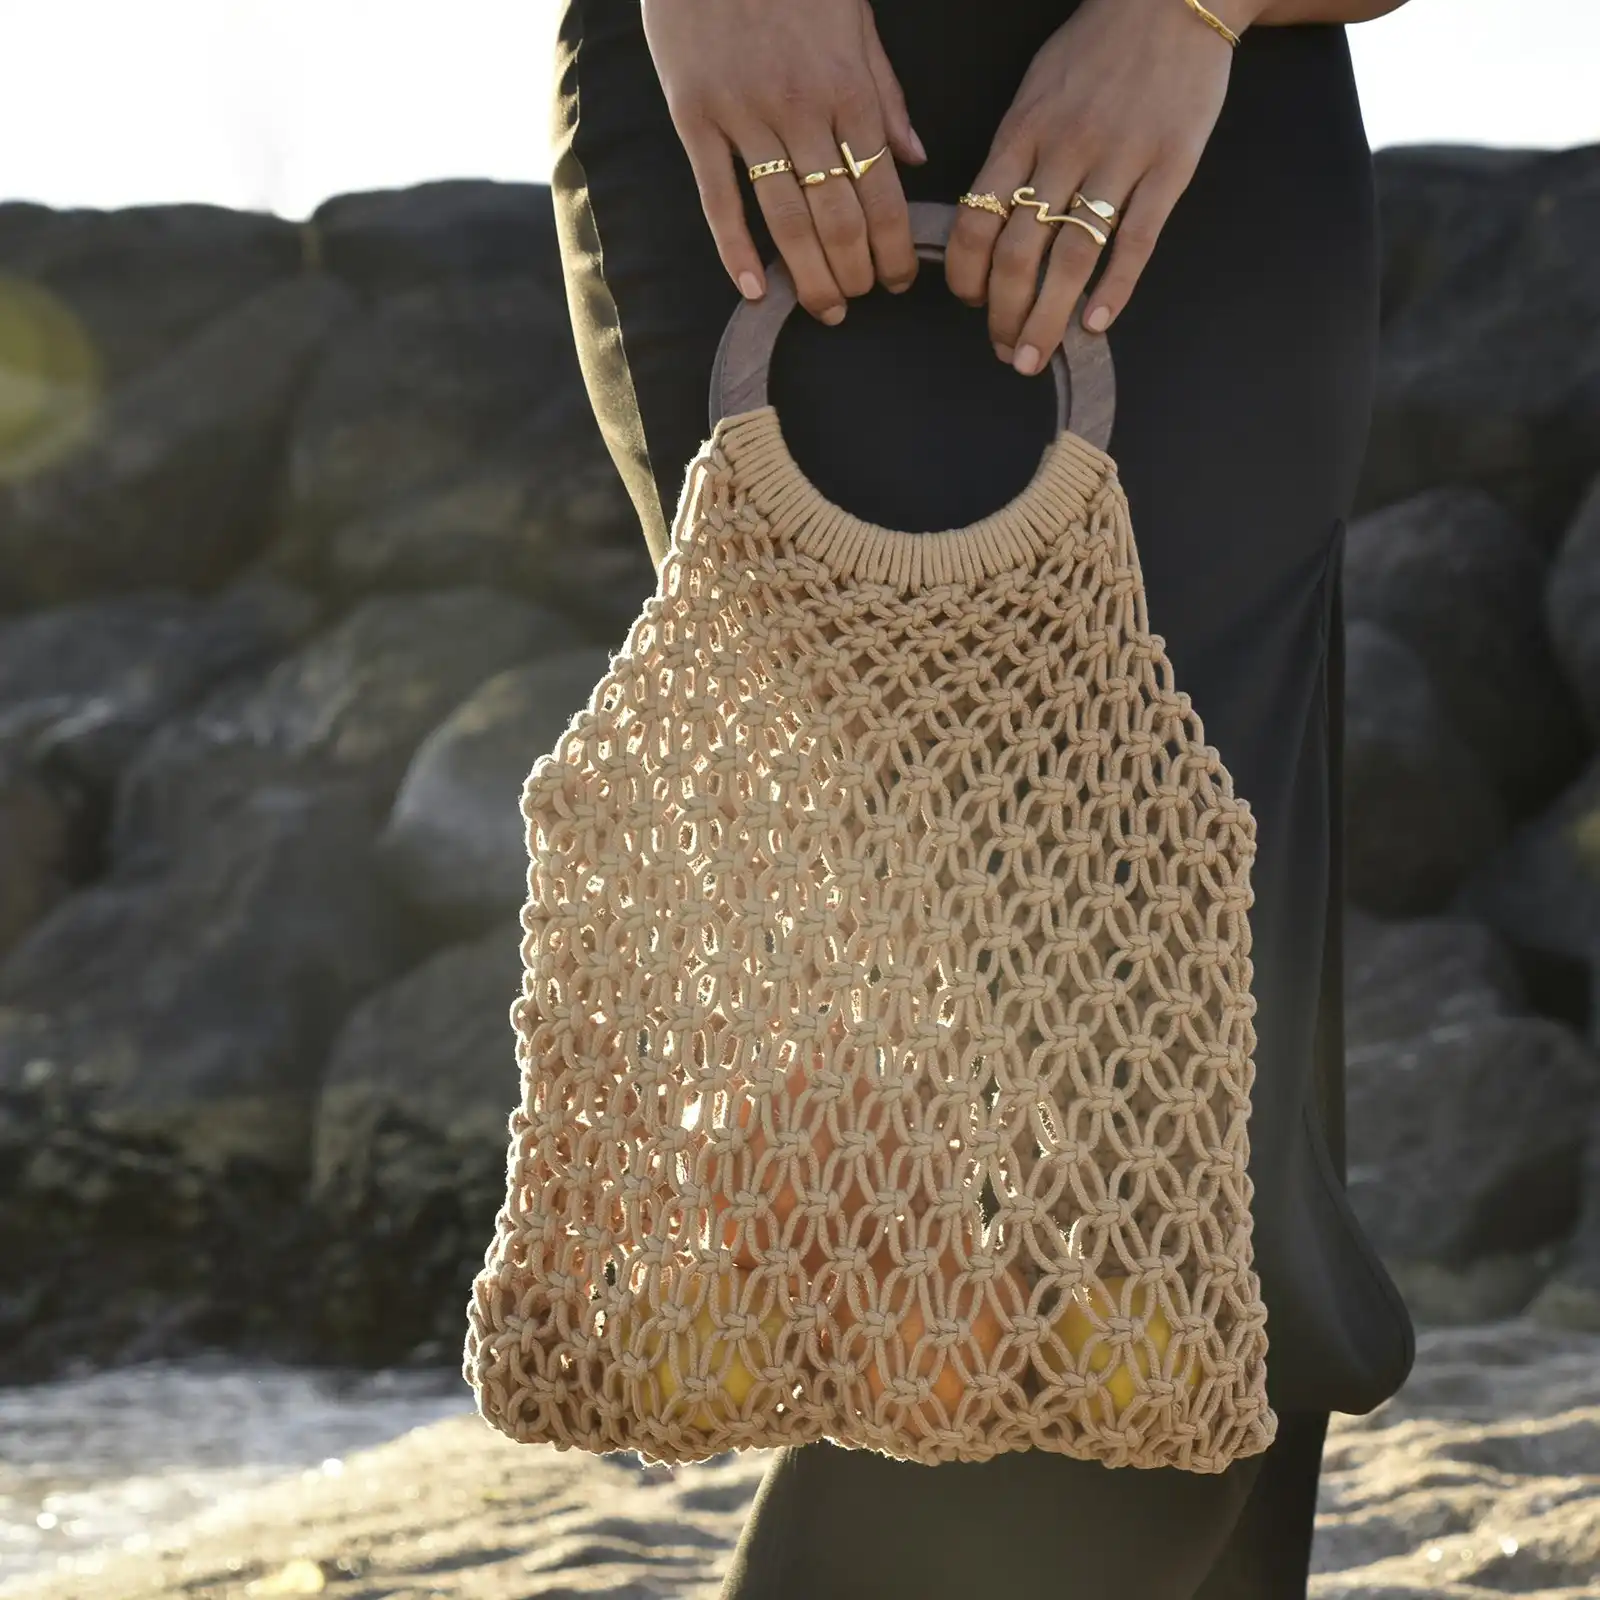 Culturesse Elowen Natural Woven 43.5cm Netting Bag Women's Fashion Handbag Tan